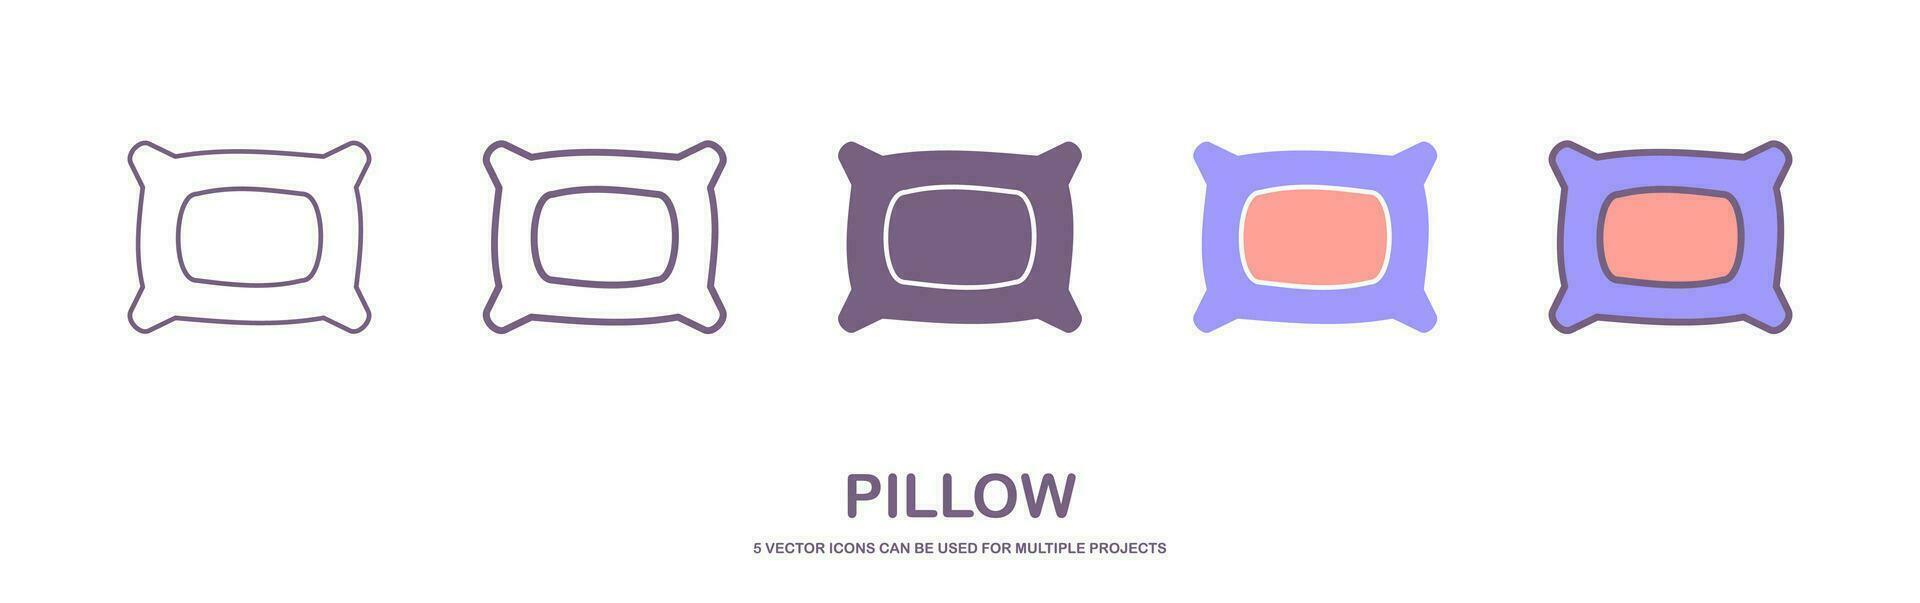 pillow logo icon designs vector. set icon of pillow. sign vector illustration icon sheet